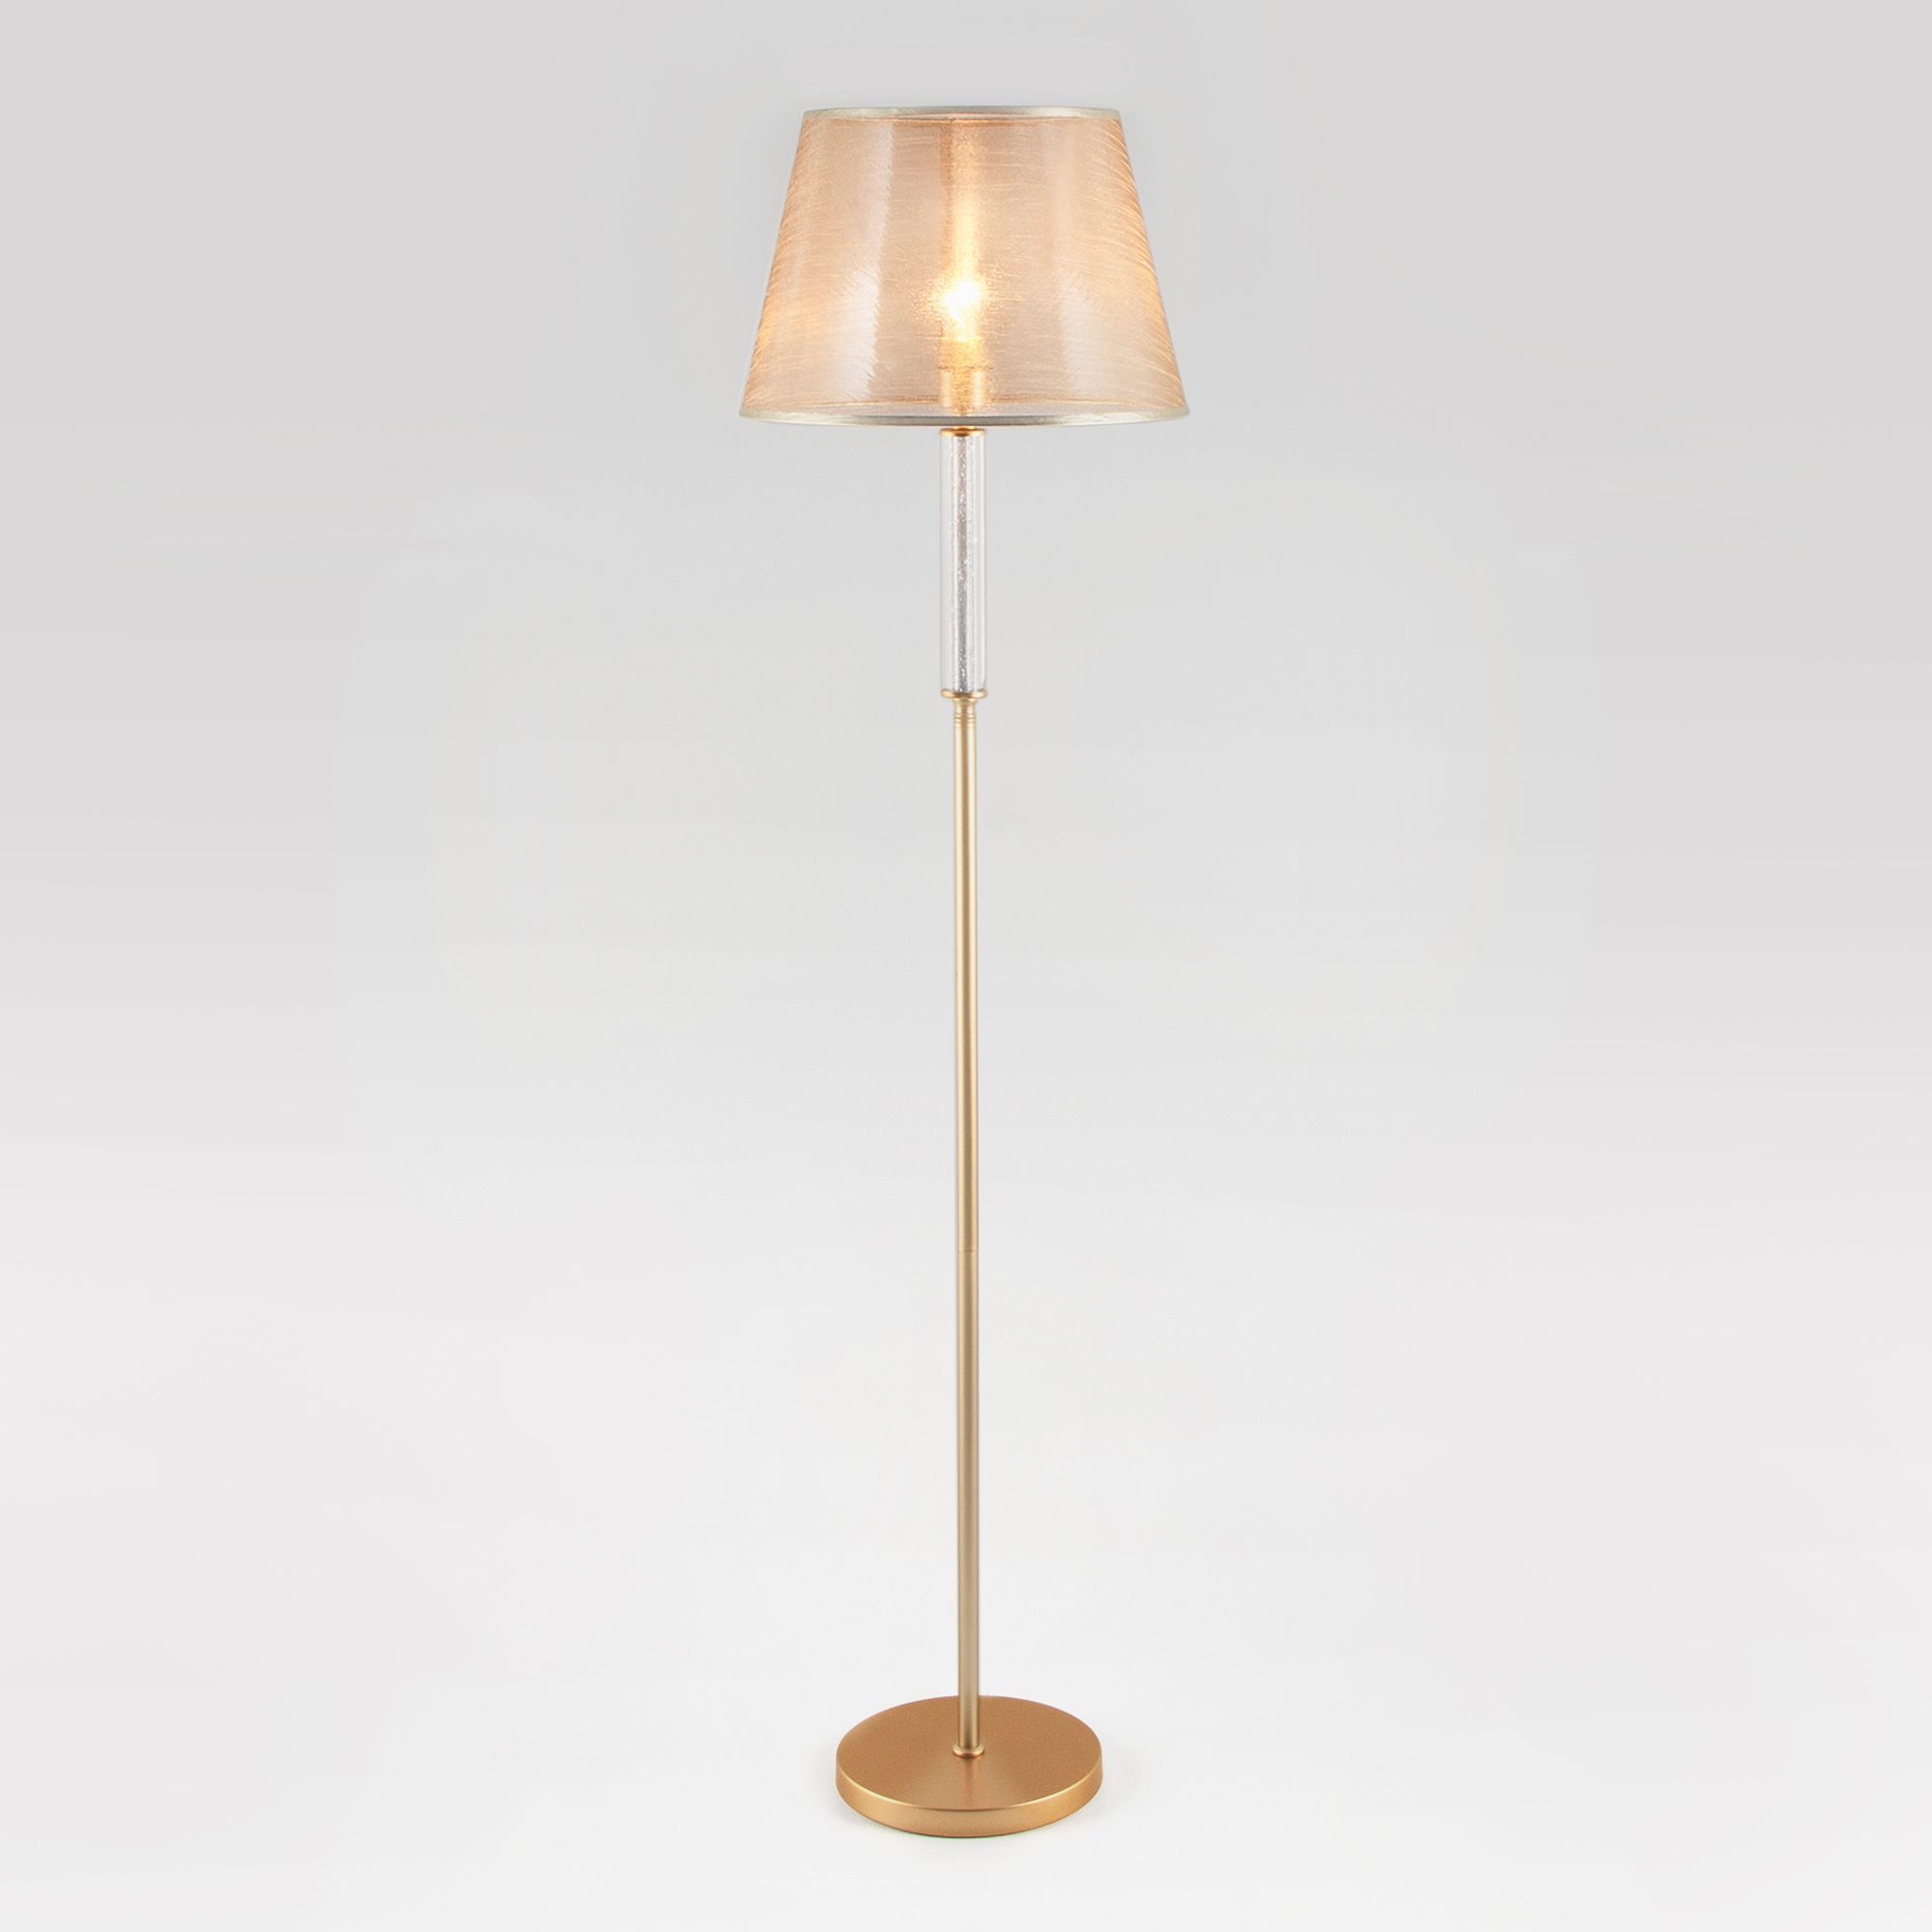 Напольный светильник с тканевым абажуром Eurosvet Alcamo 01076/1 перламутровое золото. Фото 1